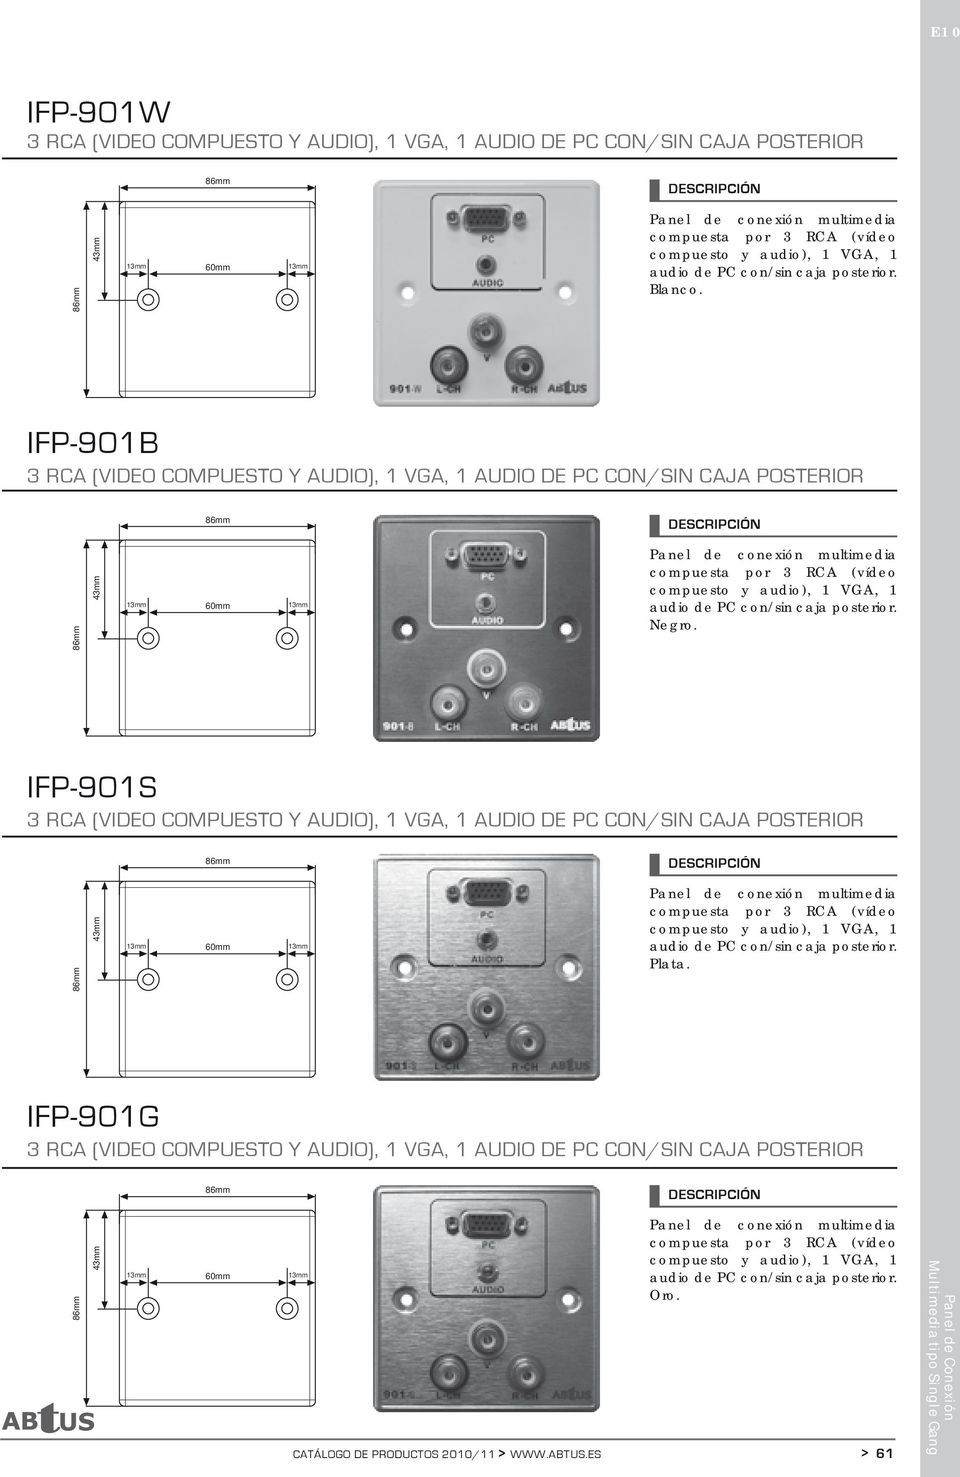 IFP-901S 3 RCA (VIDEO COMPUESTO Y AUDIO), 1 VGA, 1 AUDIO DE PC CON/SIN CAJA POSTERIOR Plata.